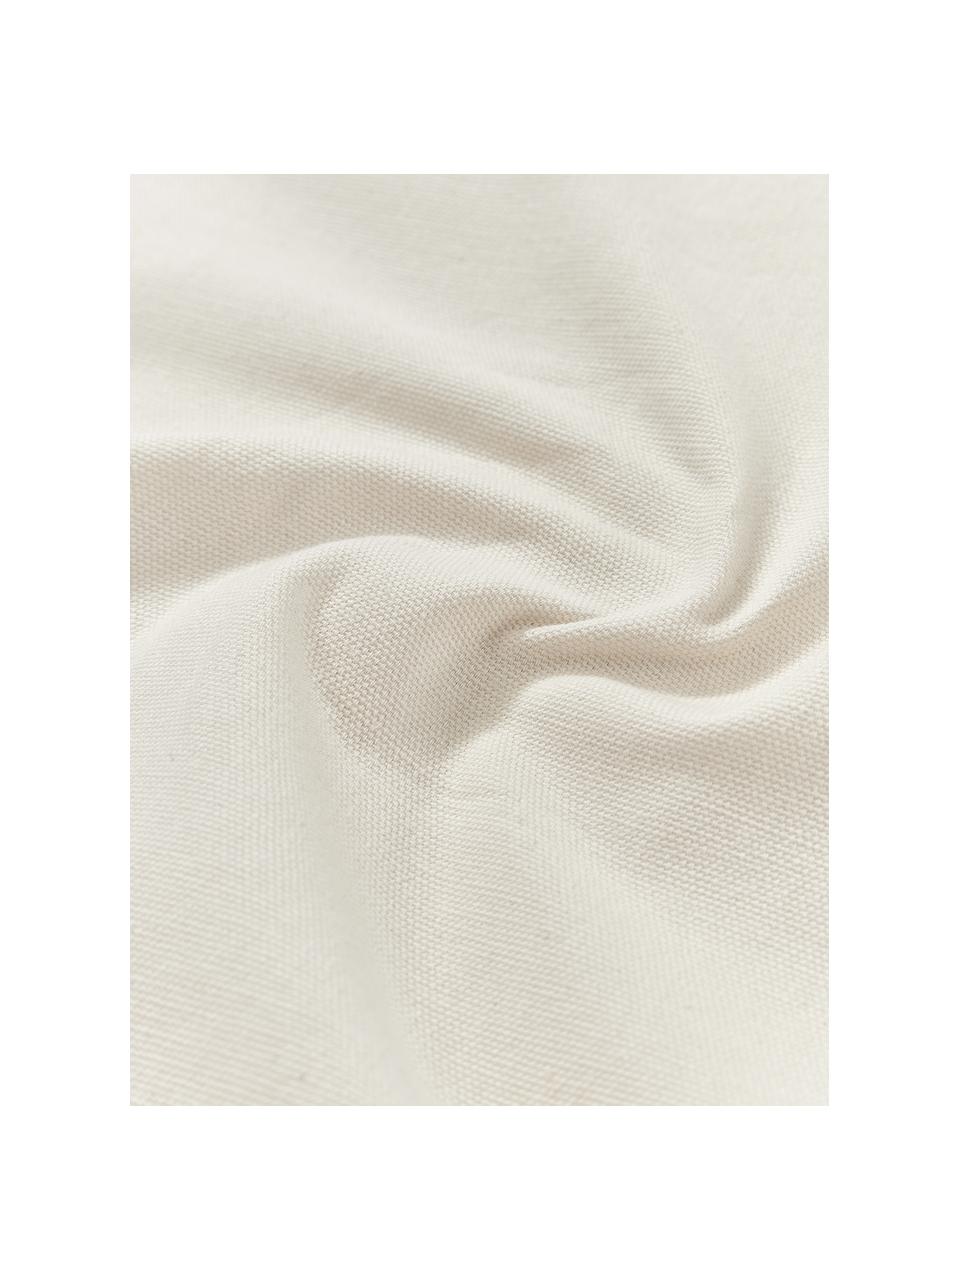 Poszewka na poduszkę z bawełny z tuftowaną dekoracją Sela, 100% bawełna z certyfikatem BCI, Kremowobiały, brązowy, beżowy, S 45 x D 45 cm